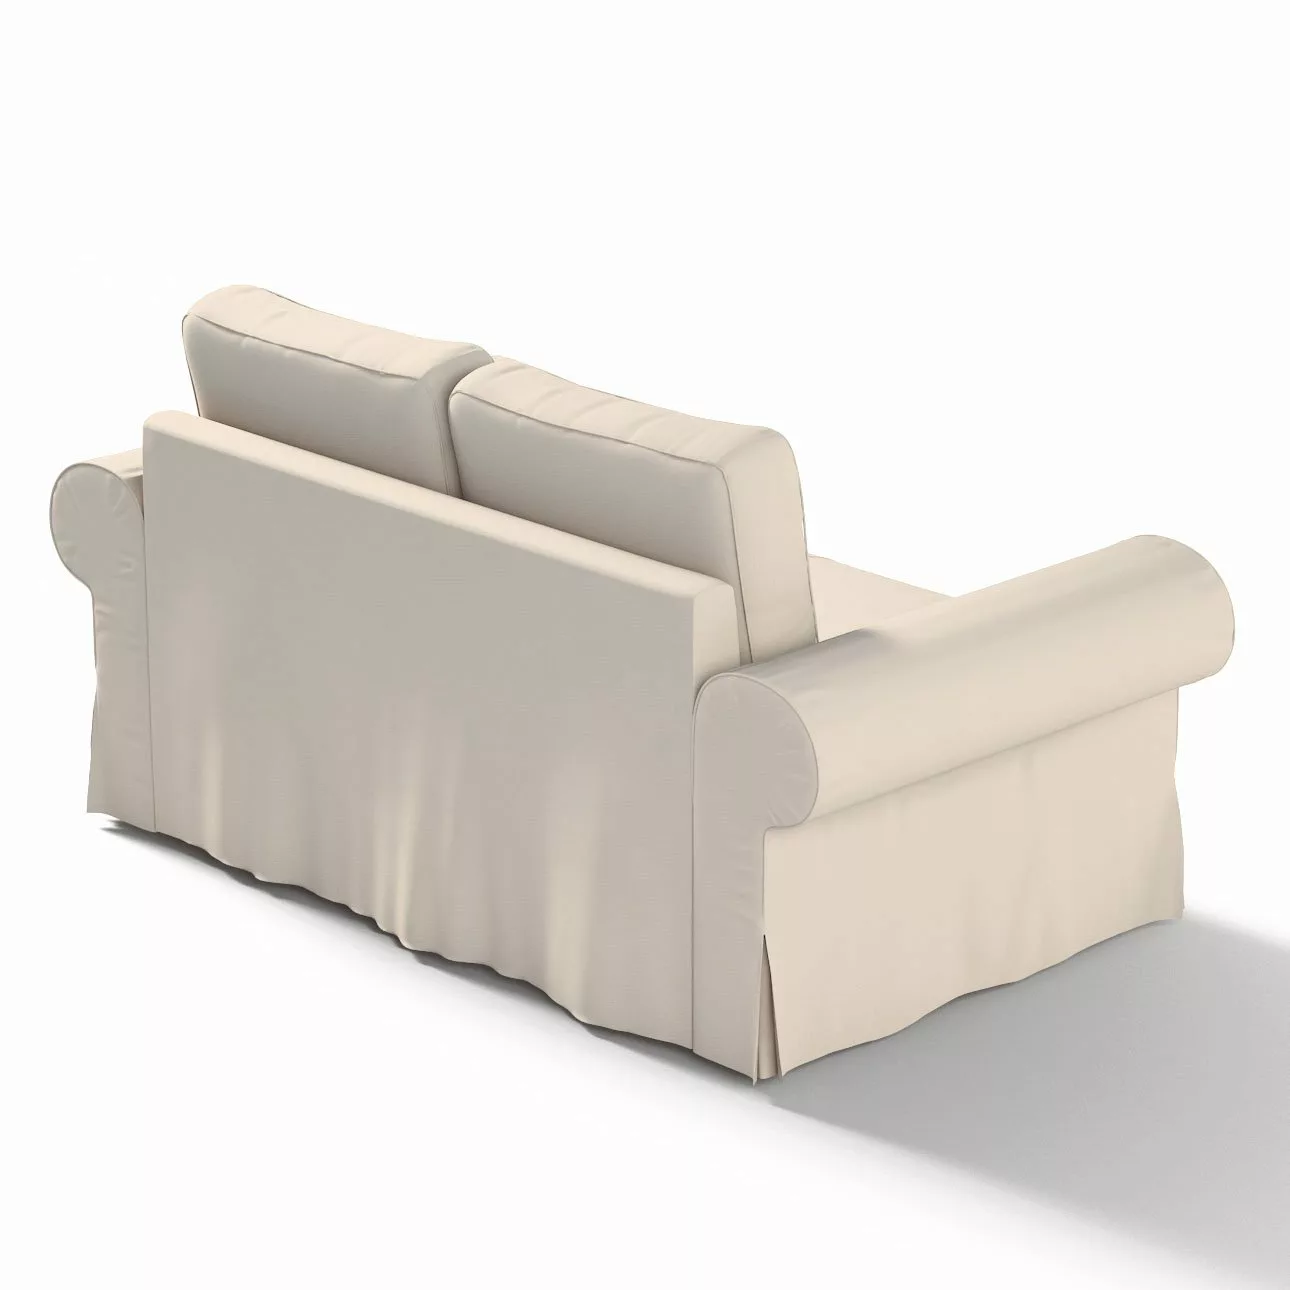 Bezug für Backabro 2-Sitzer Sofa ausklappbar, naturweiß, Bezug für Backabro günstig online kaufen